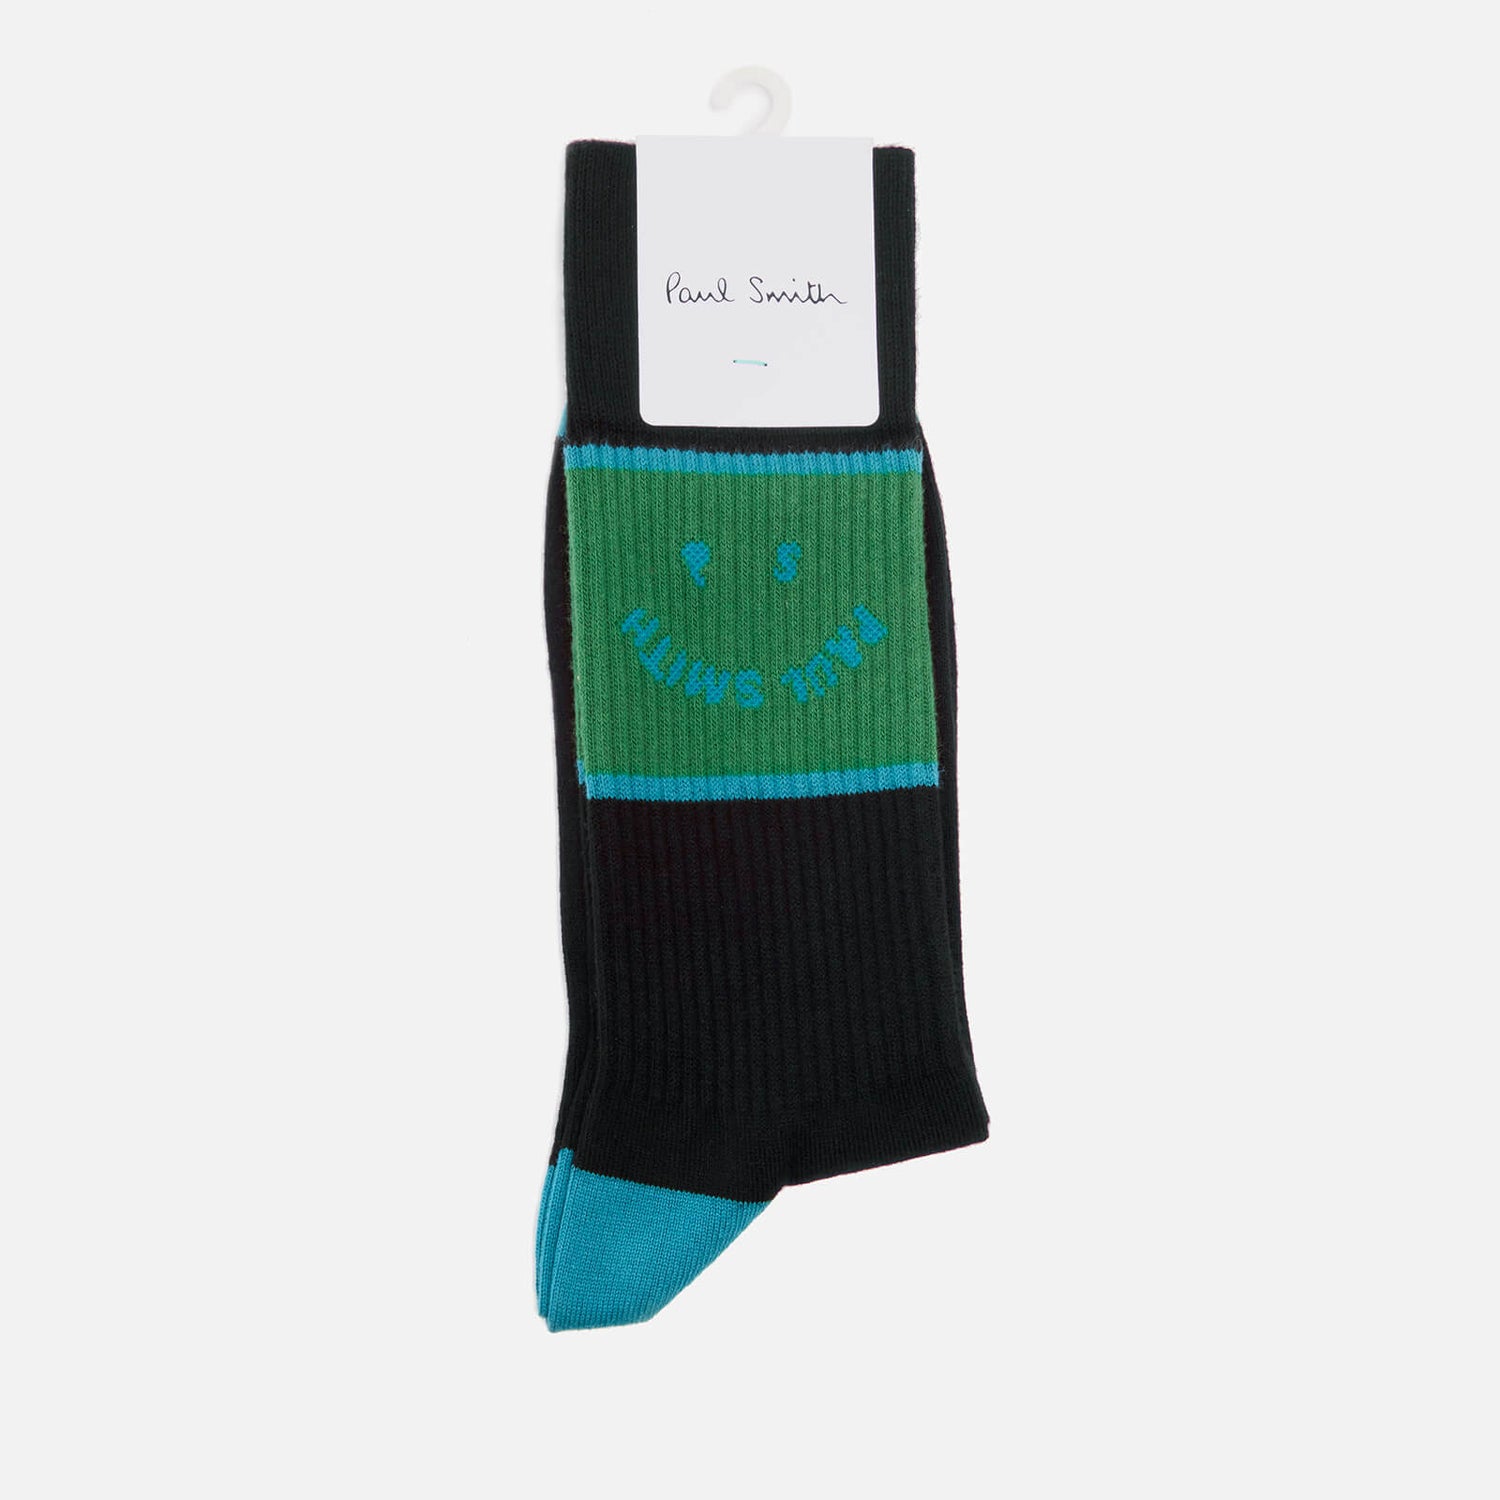 PS Paul Smith Men's Face Socks - Black